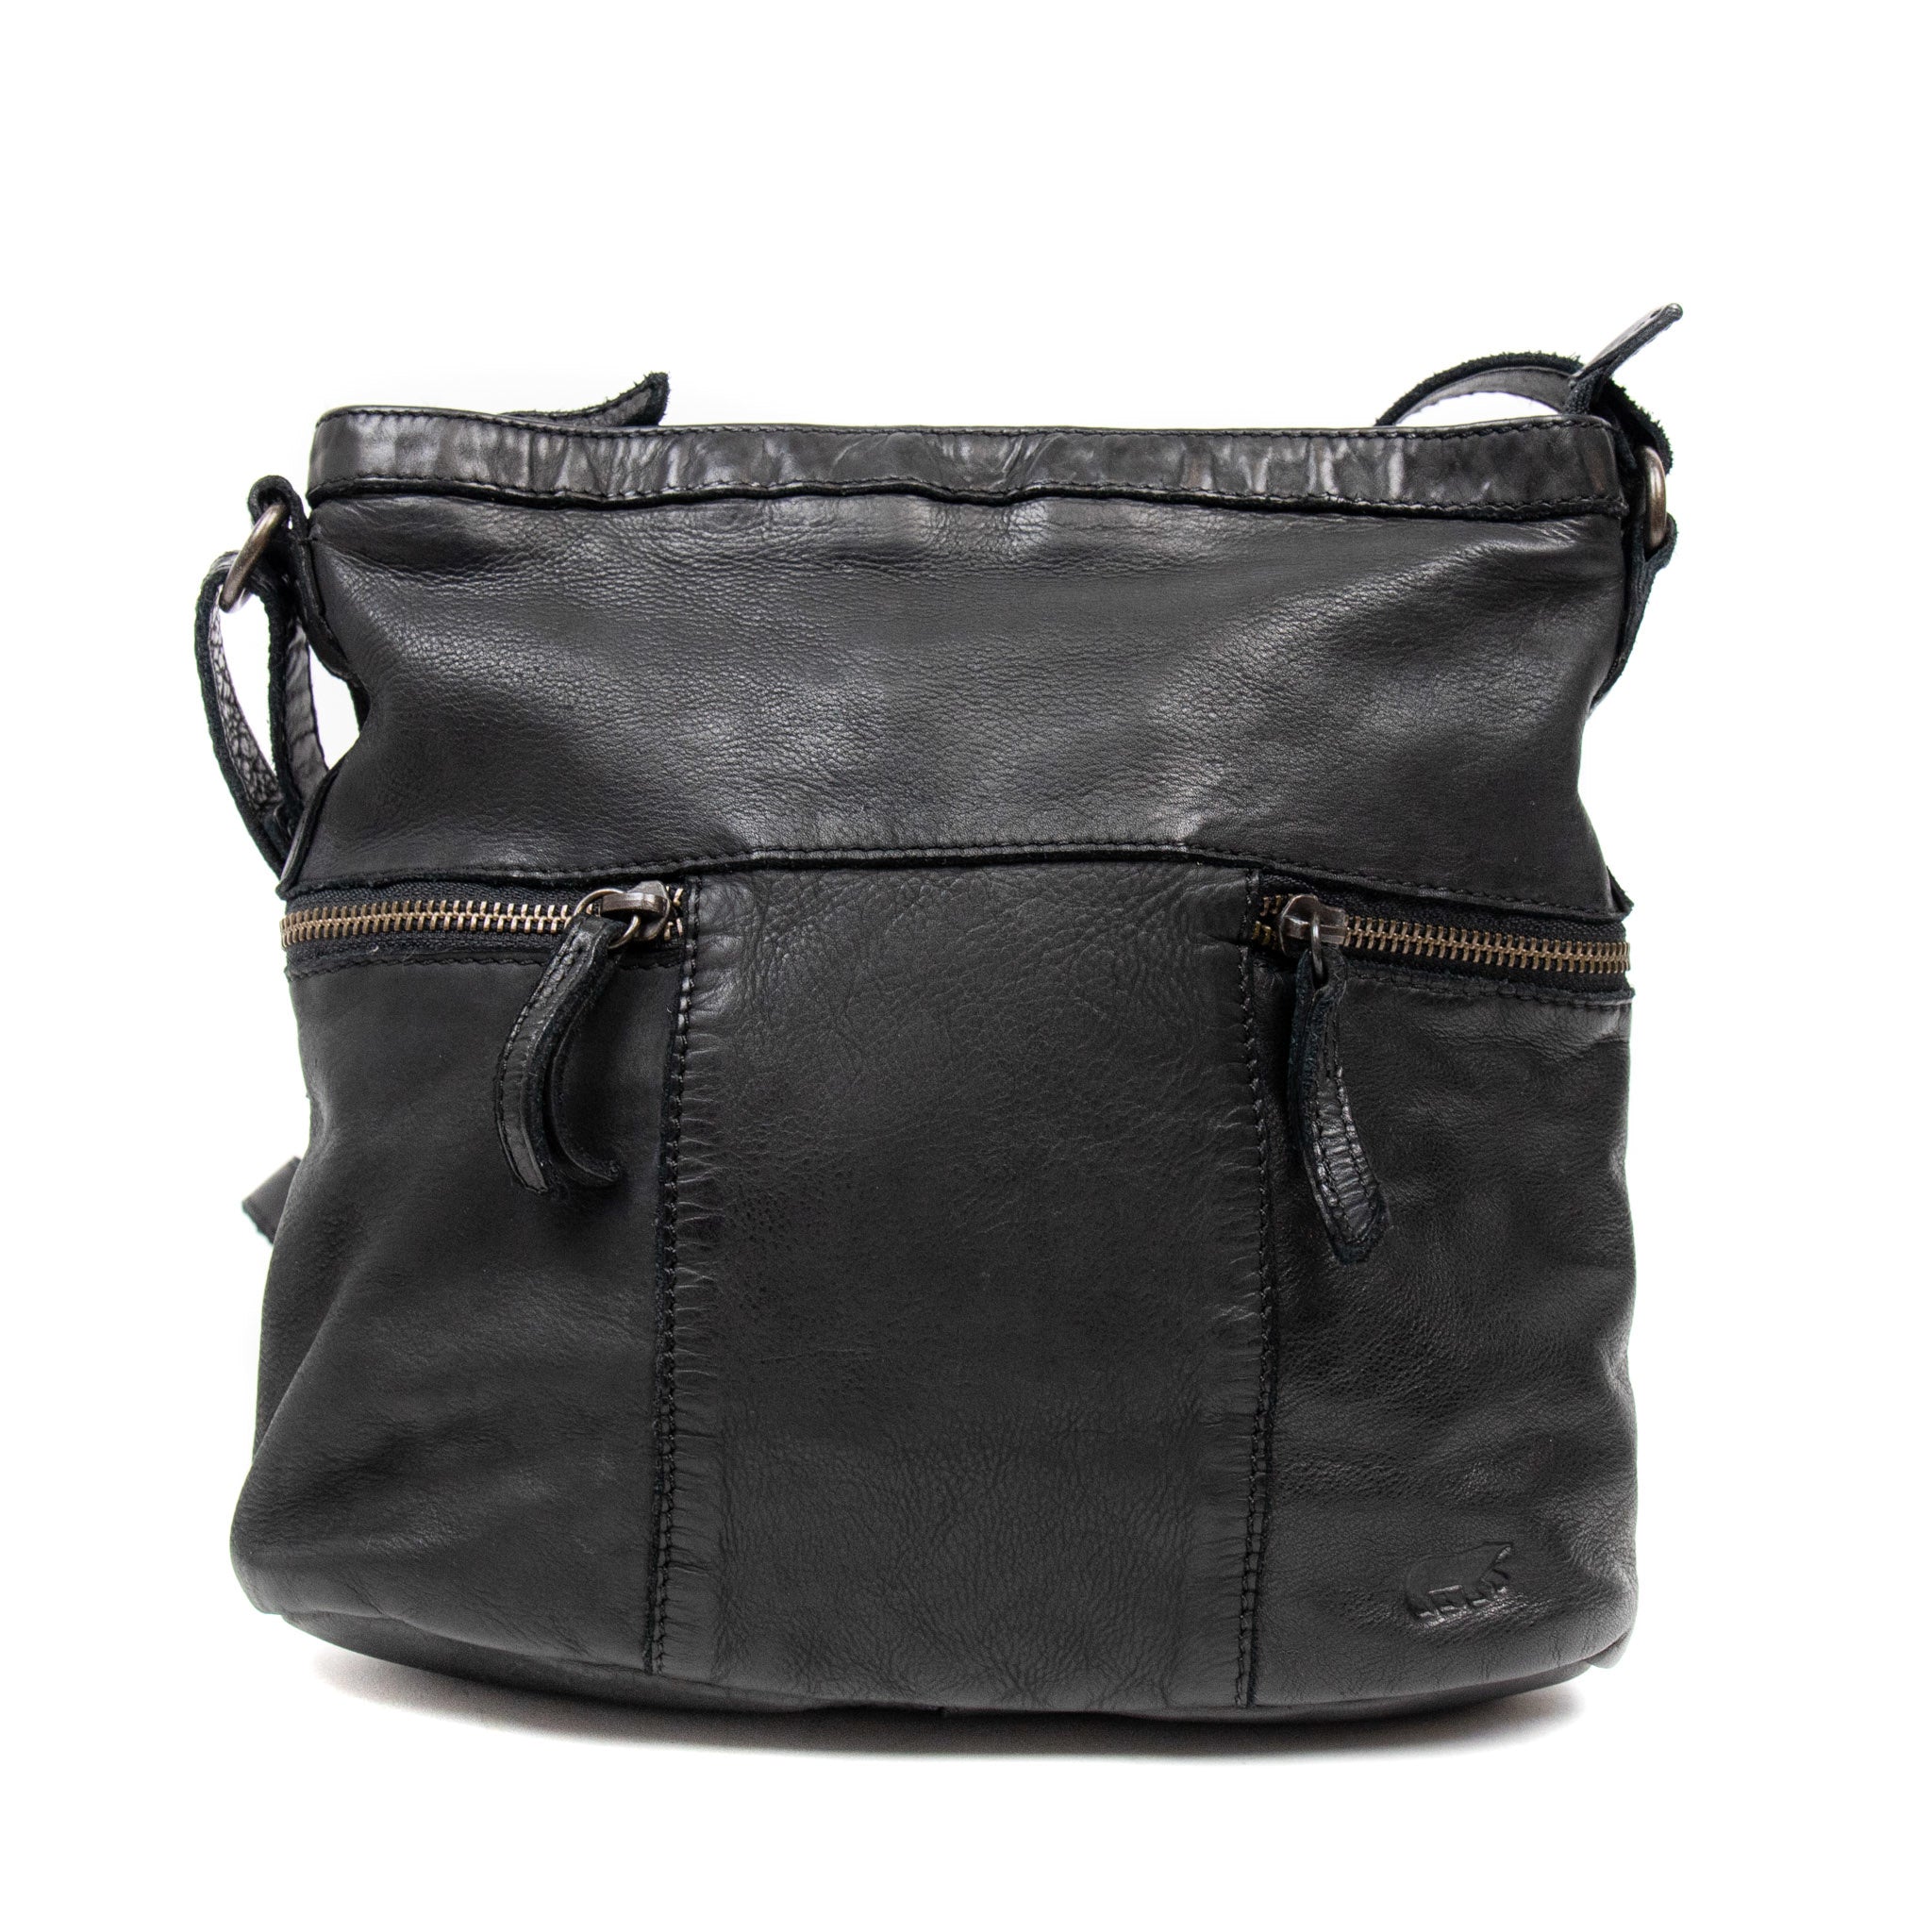 Shoulder bag 'Chessi' black - CL 35556